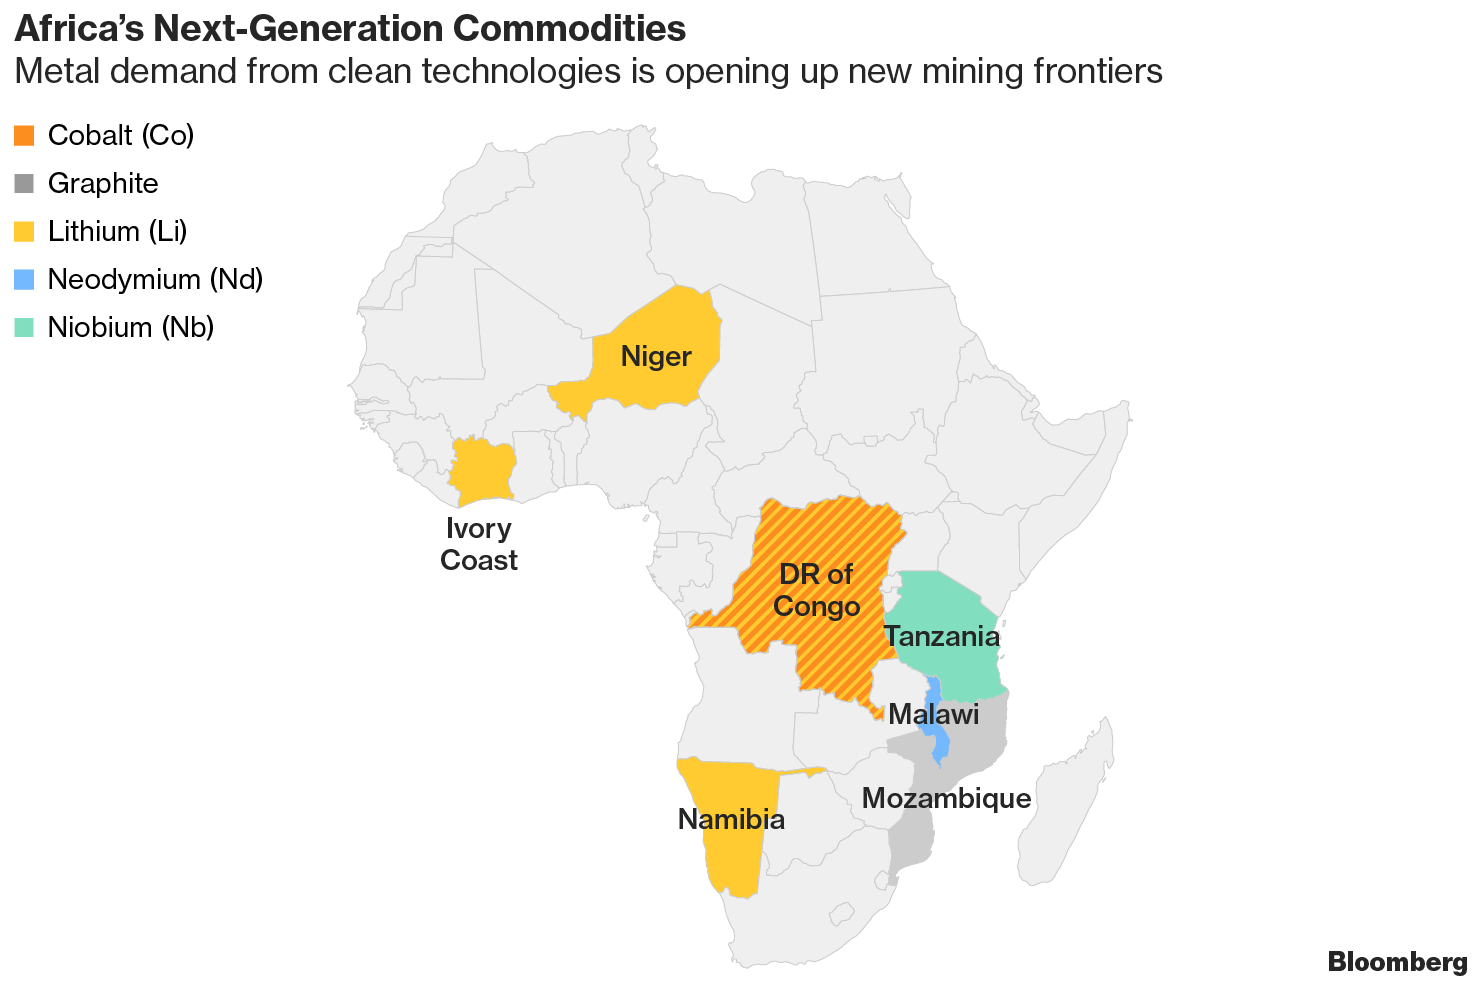 De Beers seeks buyer for Voorspoed mine - International Mining